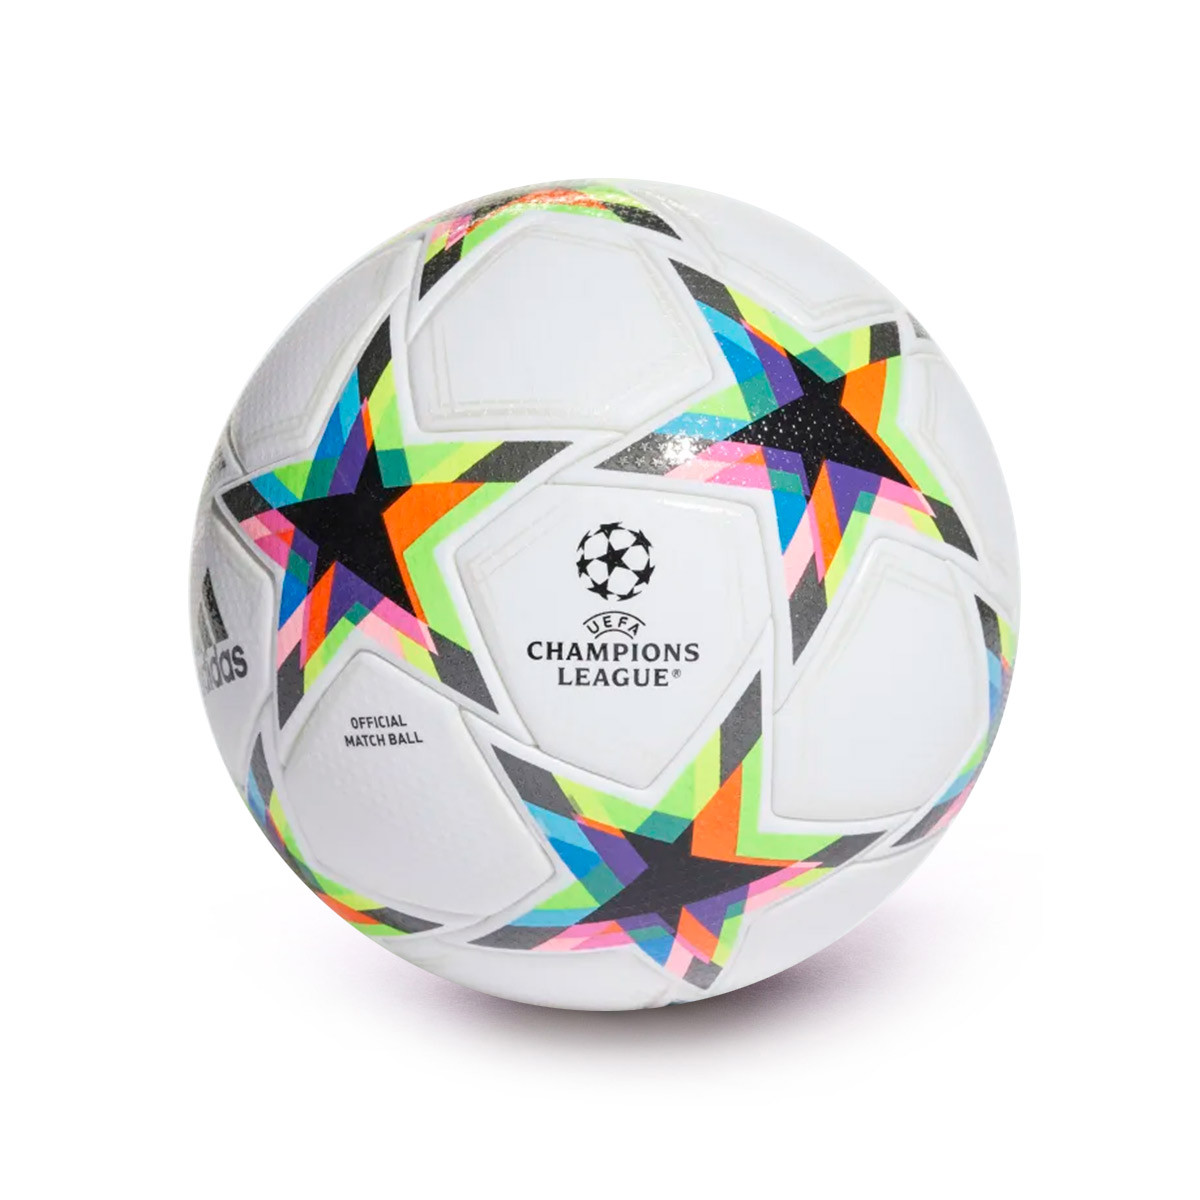 Balon Adidas Champions League Ucl Pro 2022 2023 White Silver Metallic Bright Cyan 0 